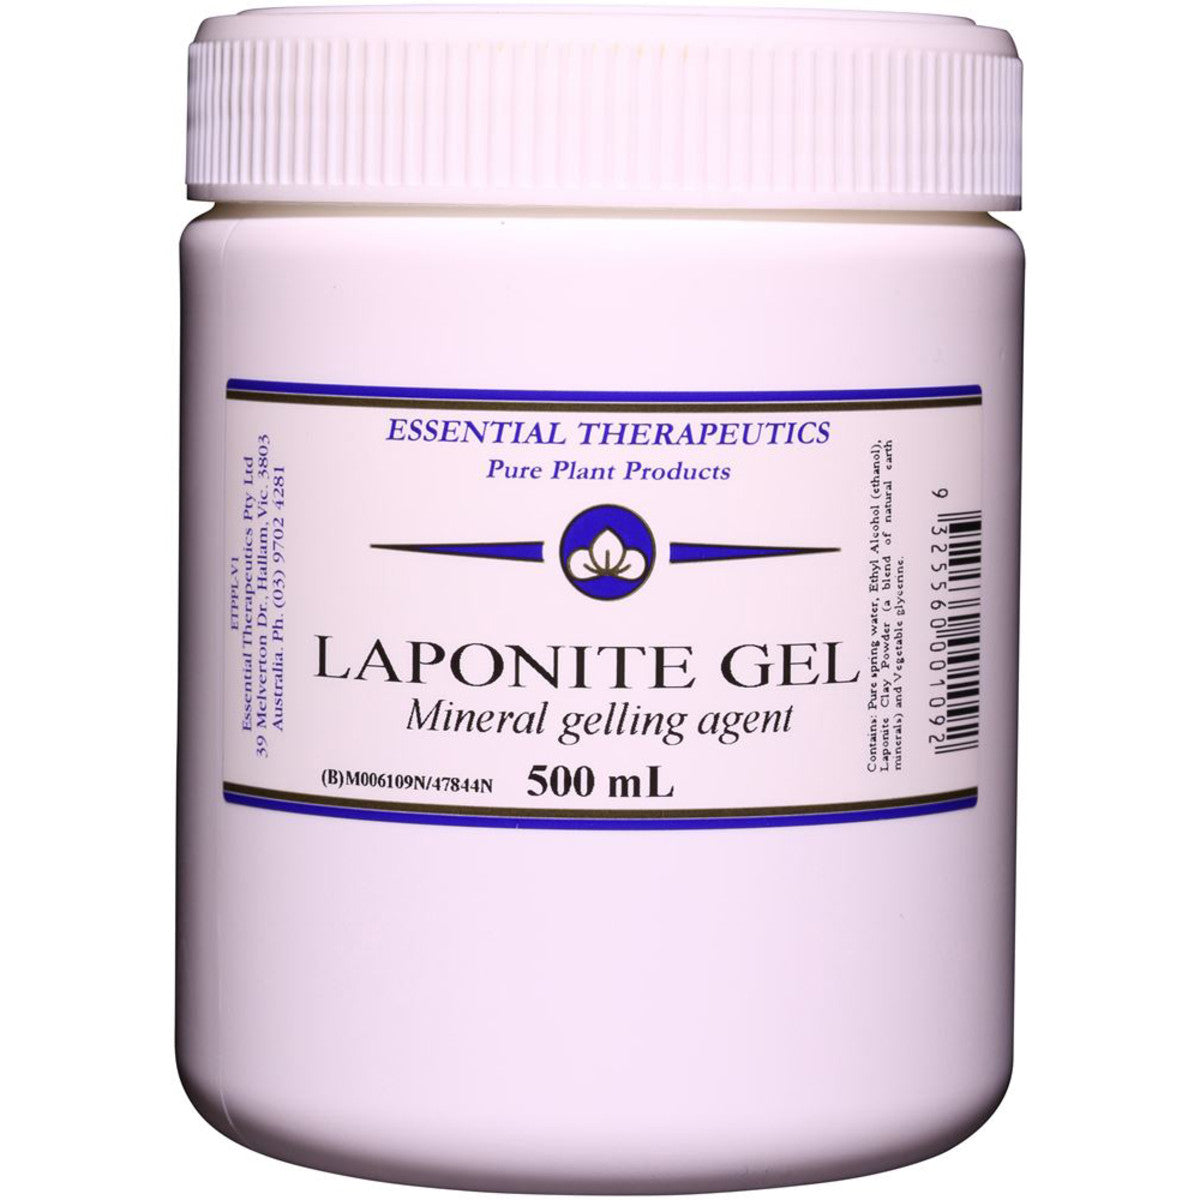 Essential Therapeutic - Laponite Gel 500ml